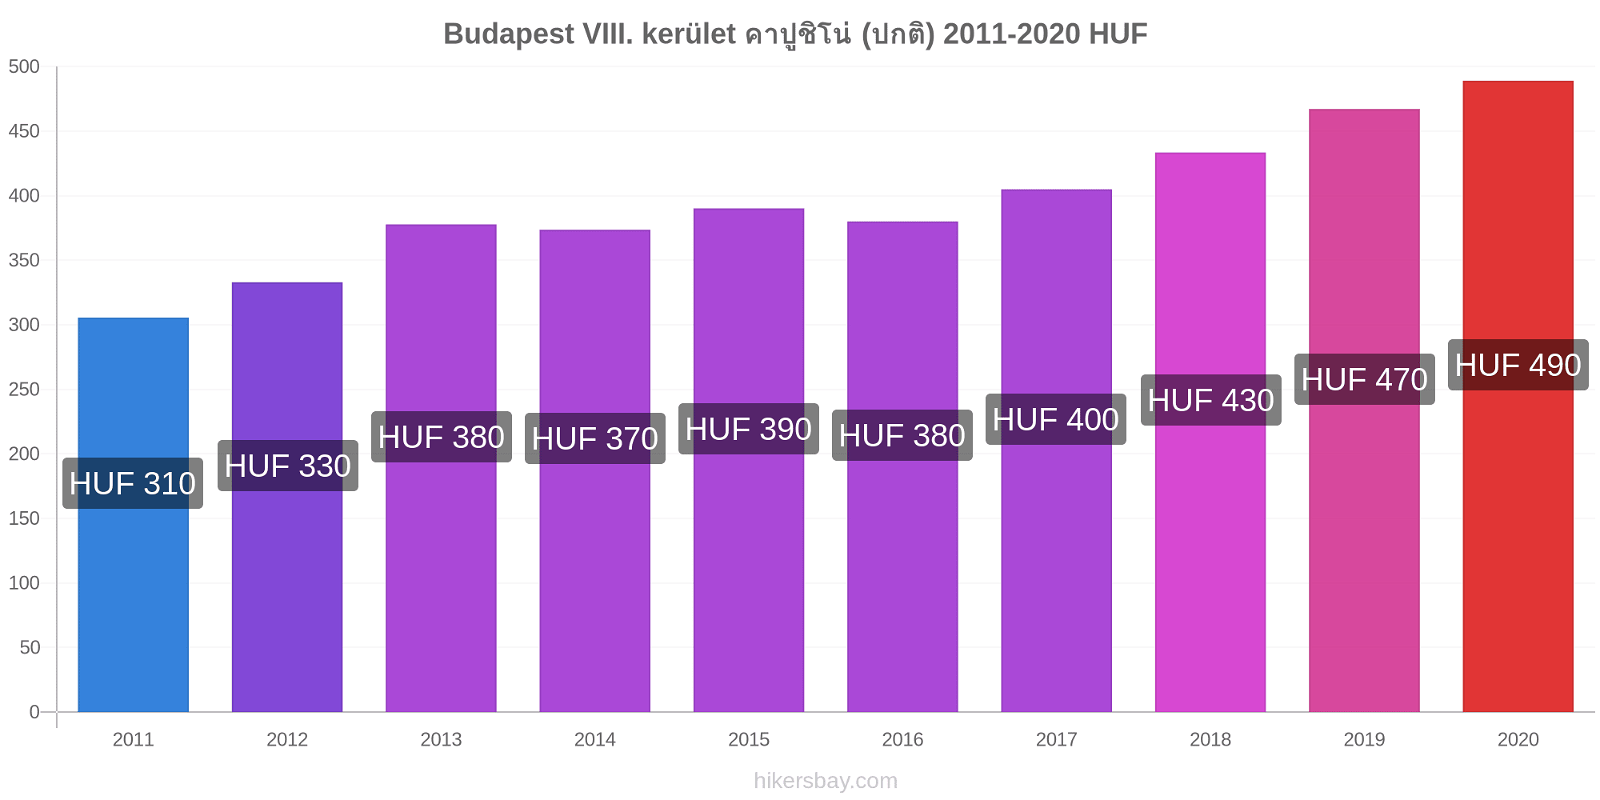 Budapest VIII. kerület การเปลี่ยนแปลงราคา คาปูชิโน่ (ปกติ) hikersbay.com